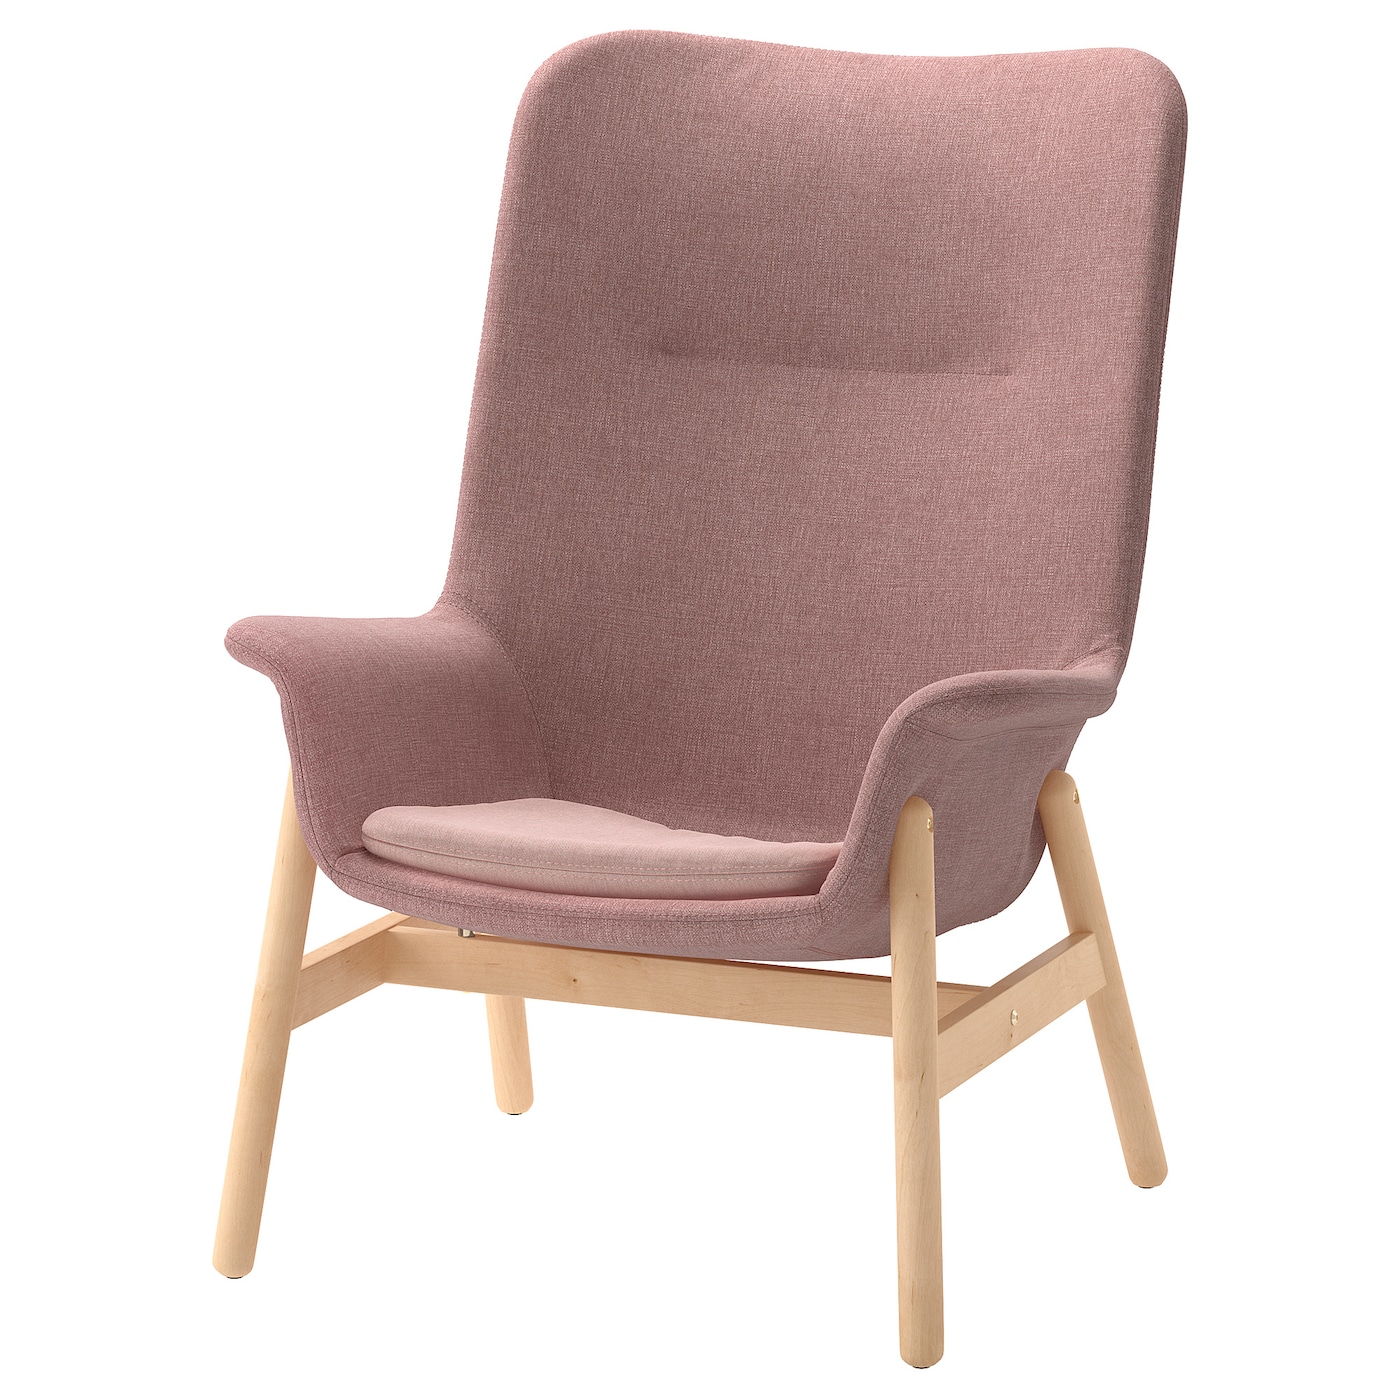 ВЕДБО Кресло с высокой спинкой, Гуннаред бледно-розовый VEDBO IKEA стул кресло boeing коричневый 19040